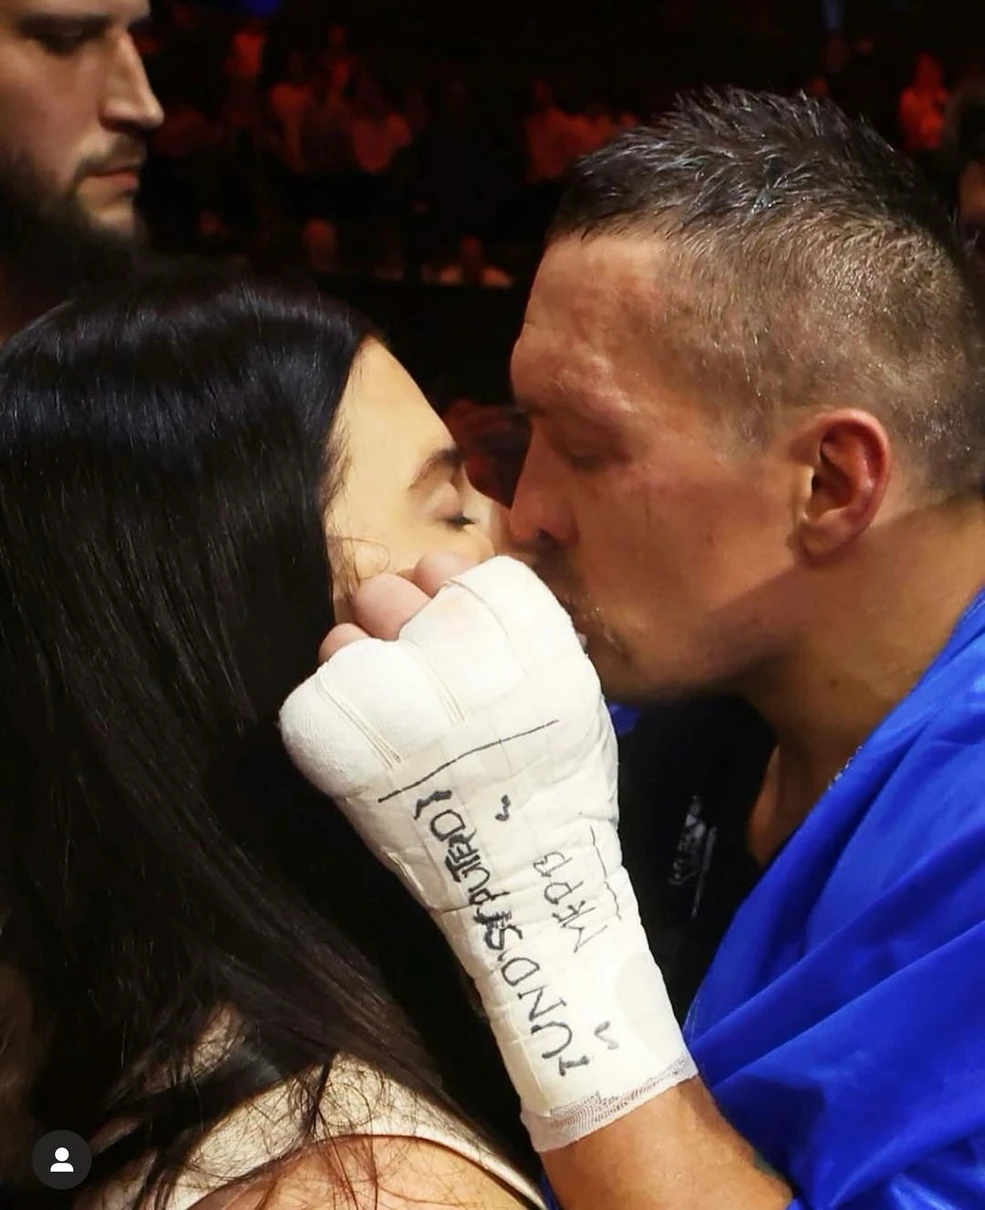 Дружина боксера Олександра Усика в день його поєдинку  з Тайсоном Ф’юрі зацілувала чоловіка, вітаючи його з перемогою.